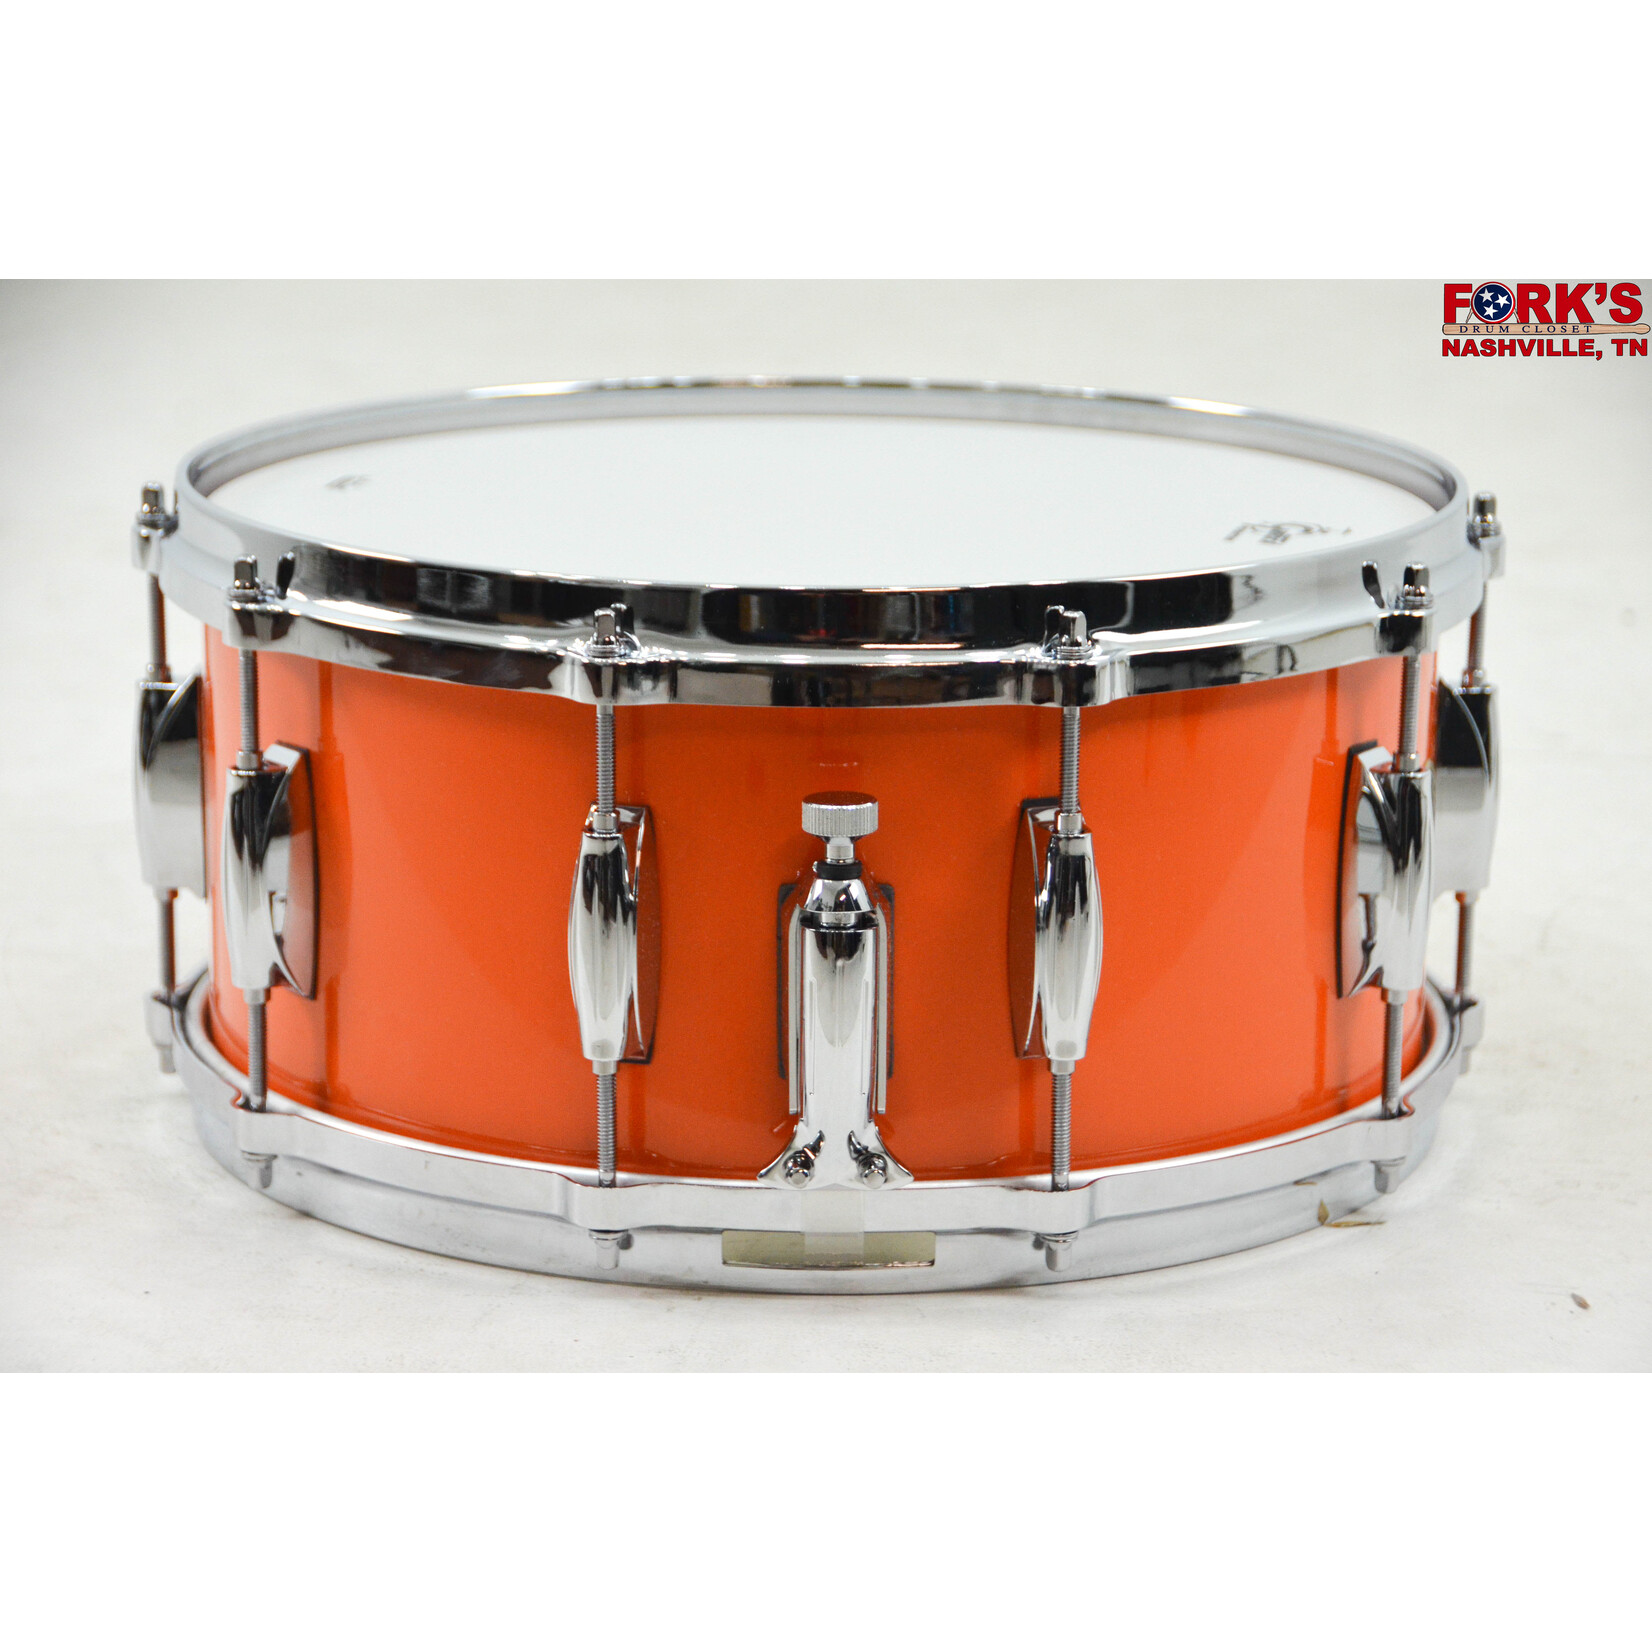 Gretsch Gretsch "Ridgeland" 6.5x14 Snare Drum - "Gretsch Orange"